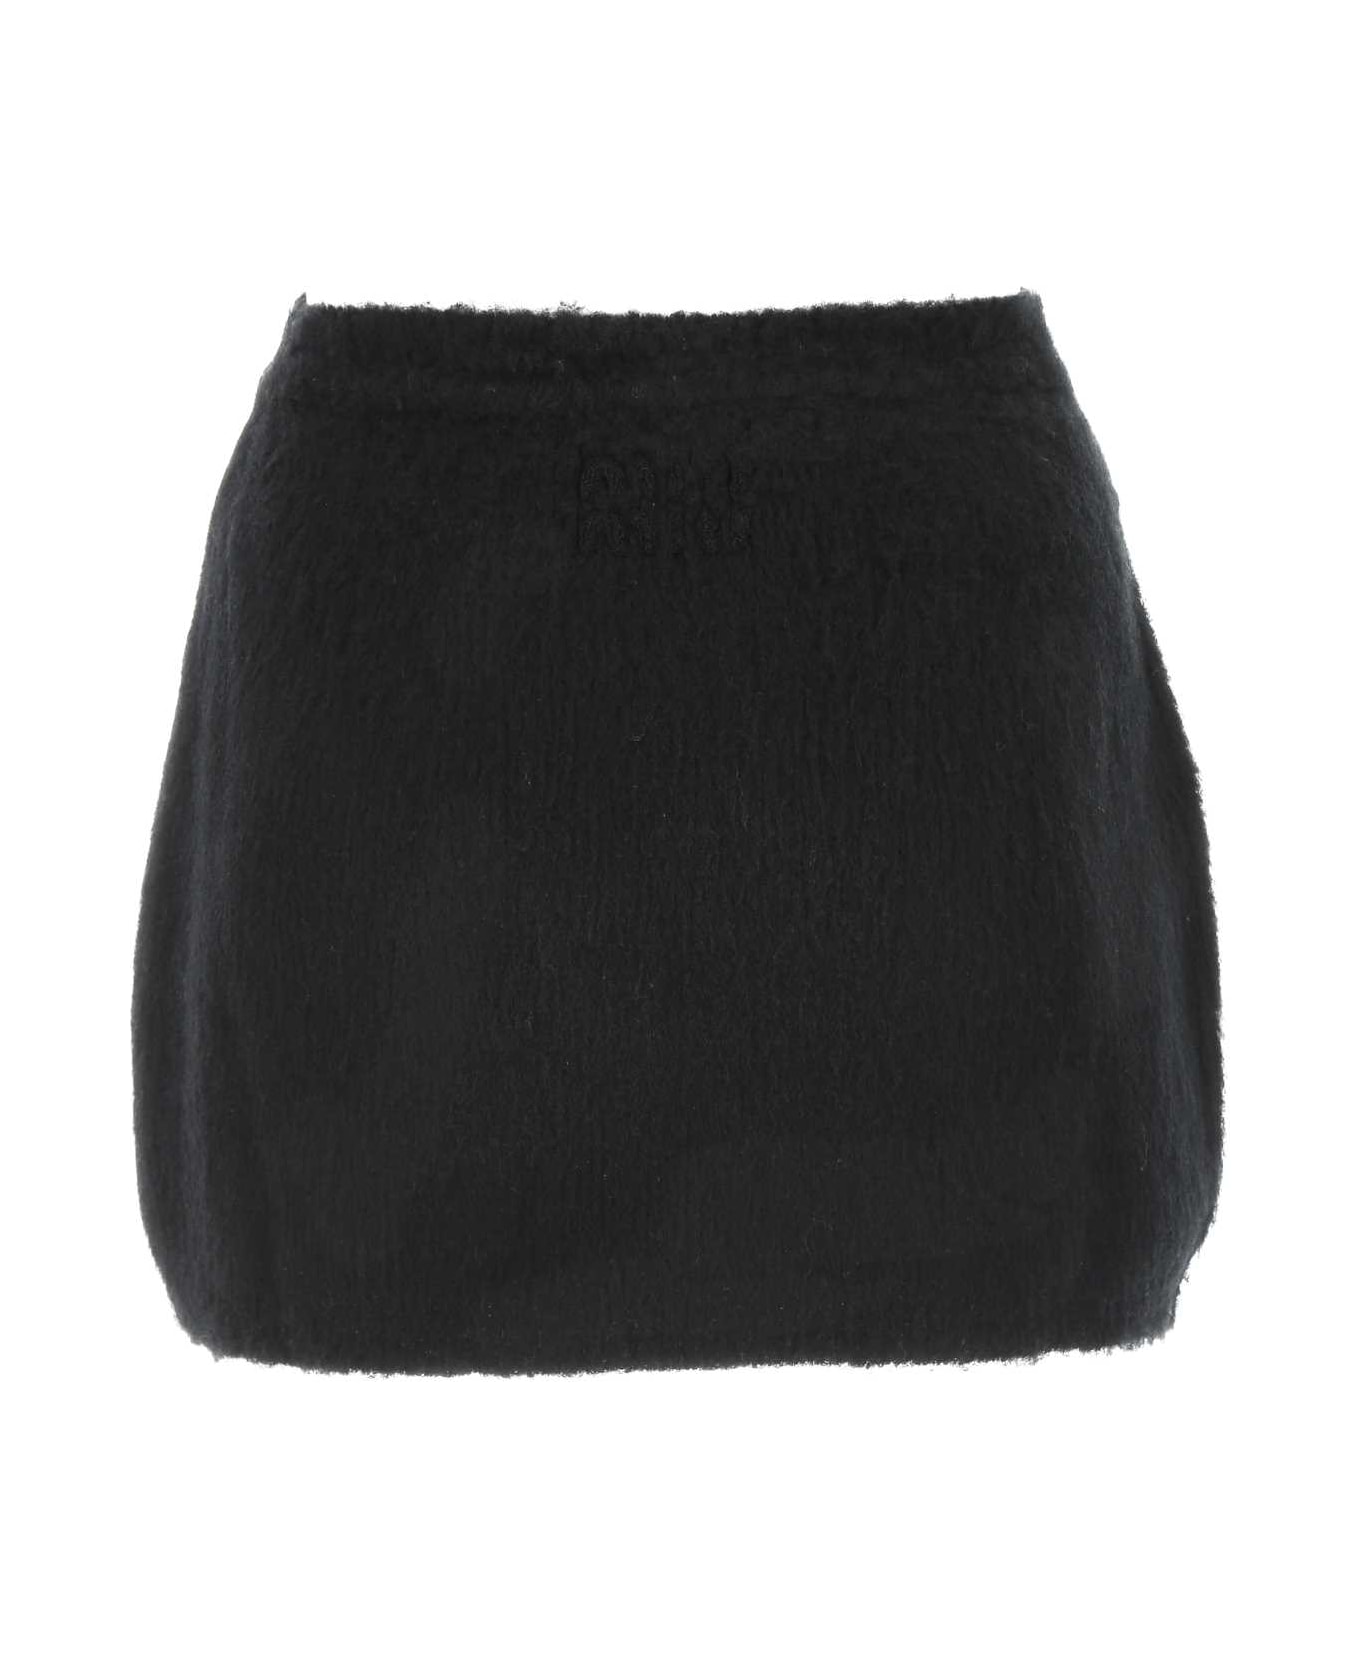 Miu Miu Black Stretch Wool Blend Mini Skirt - Black